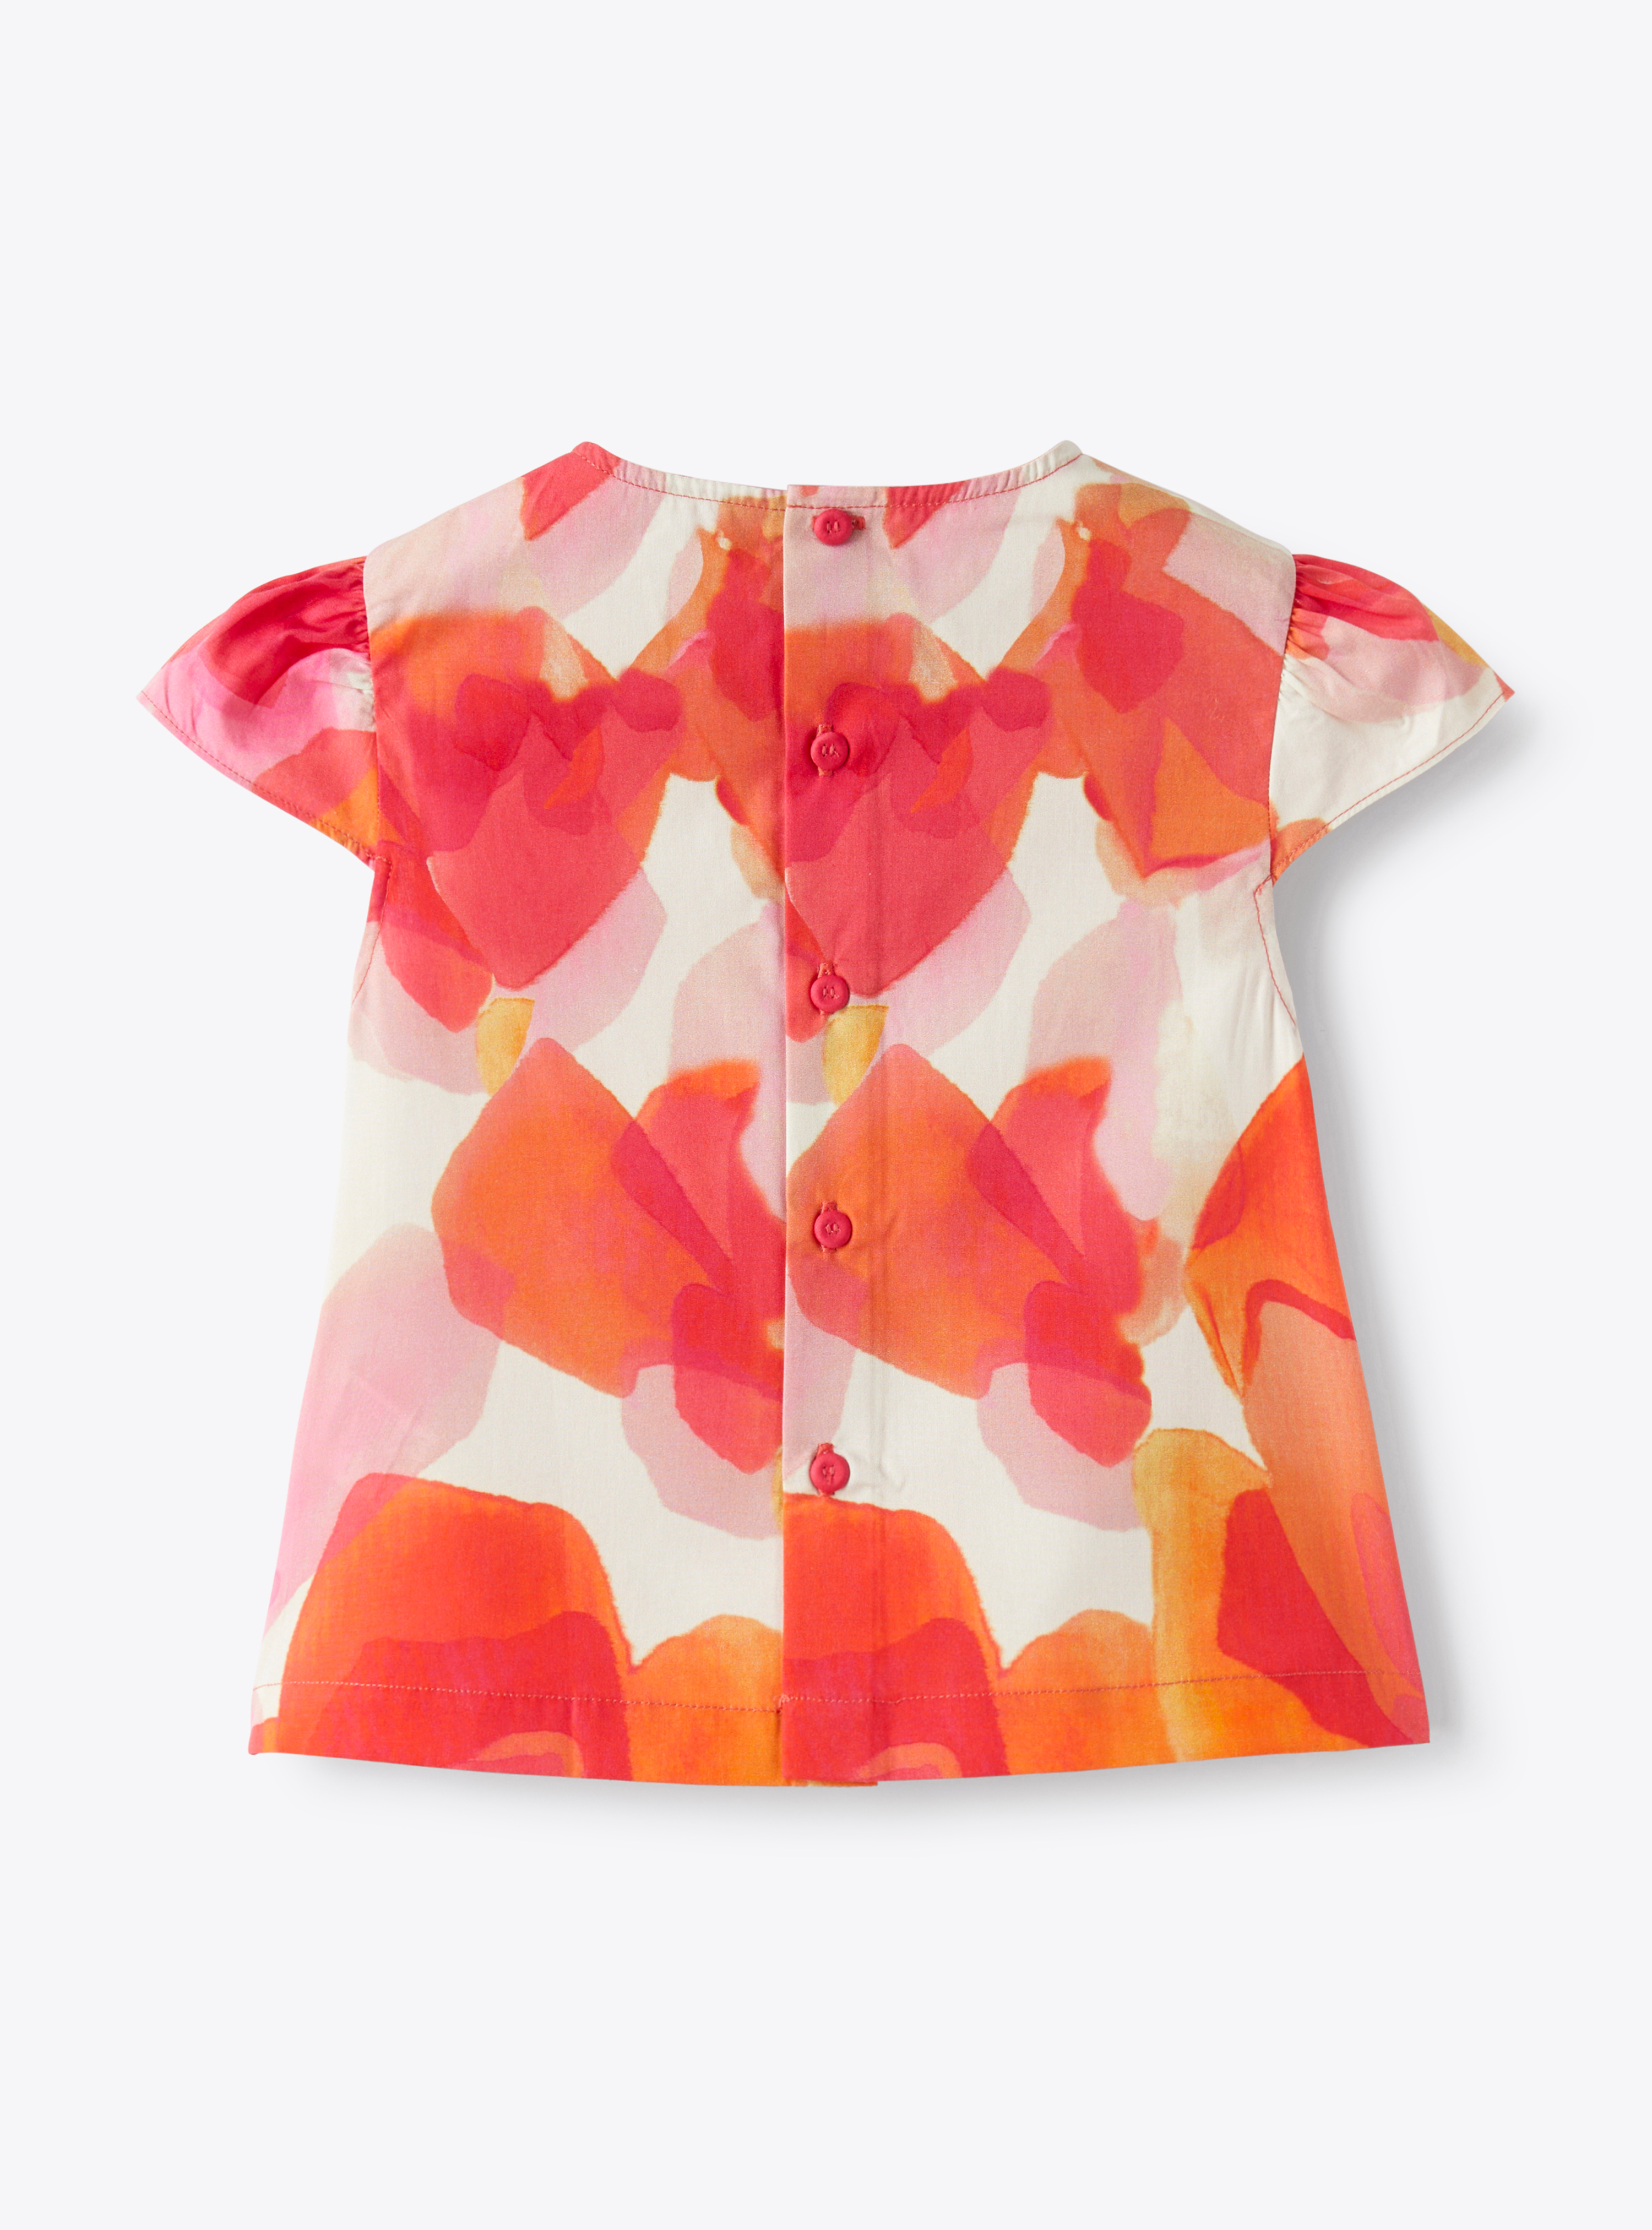 Хлопковая рубашка с эксклюзивным цветочным принтом - фуксия | Il Gufo